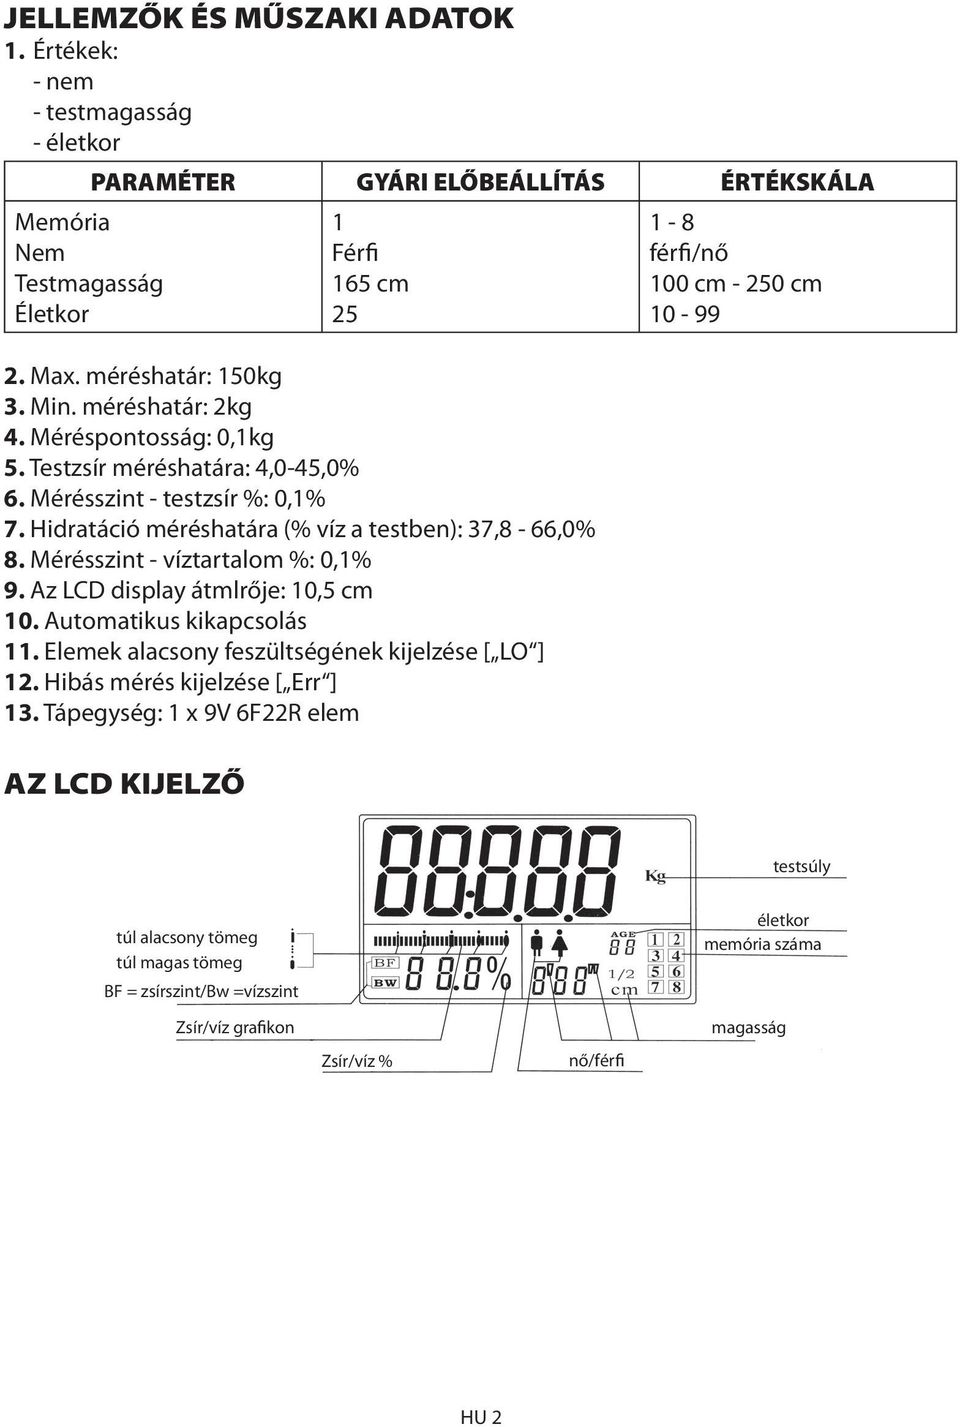 Mérésszint - víztartalom %: 0,1% 9. Az LCD display átmlrője: 10,5 cm 10. Automatikus kikapcsolás 11. Elemek alacsony feszültségének kijelzése [ LO ] 12. Hibás mérés kijelzése [ Err ] 13.